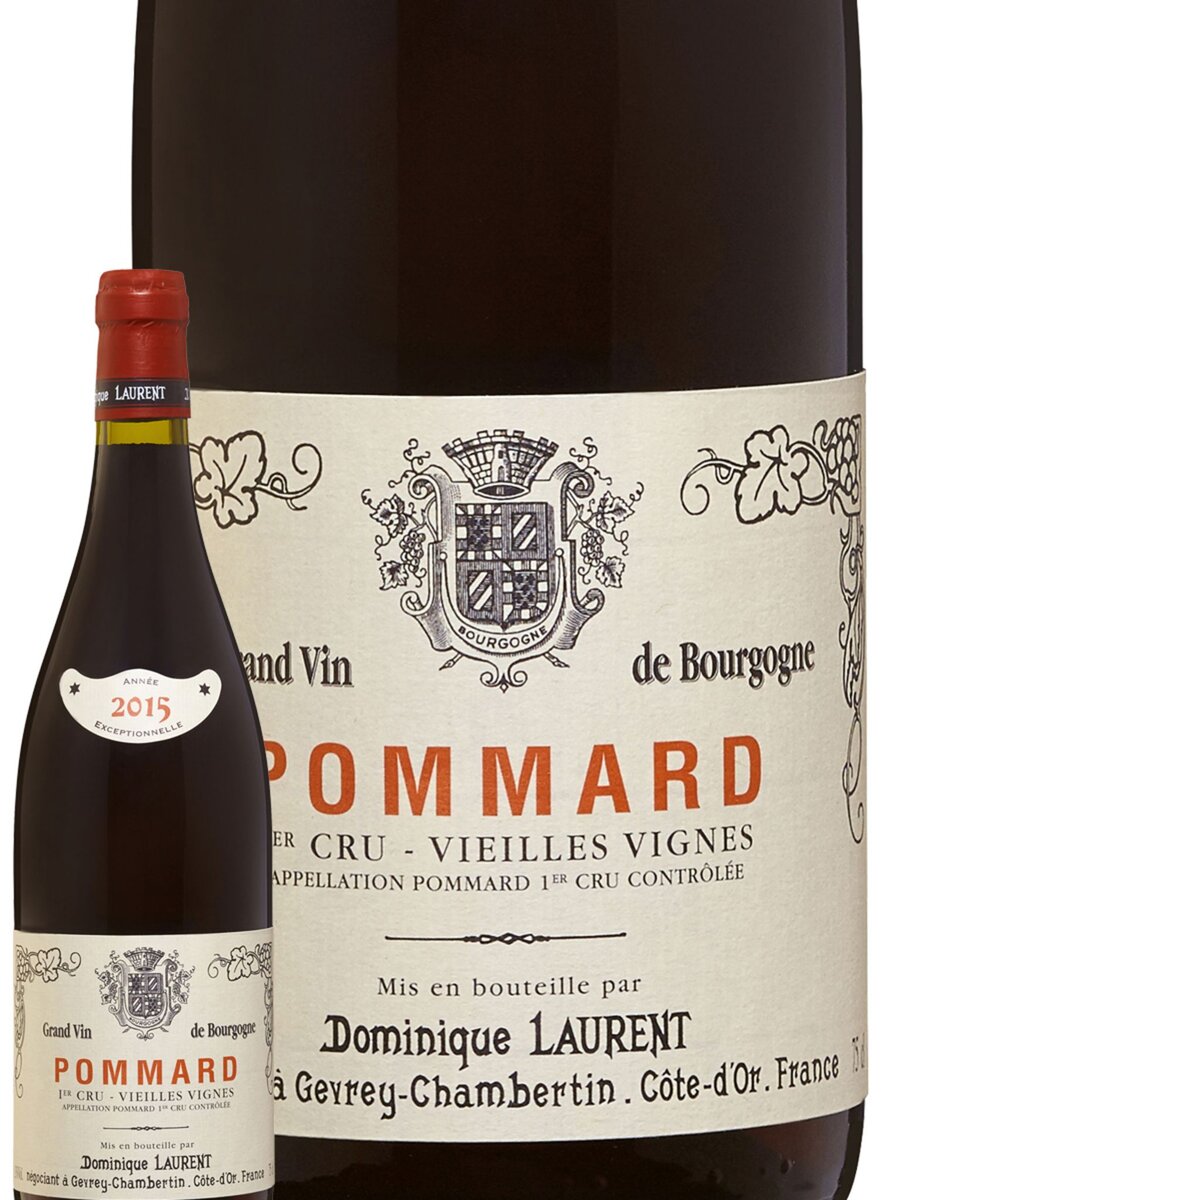 Maison Dominique Laurent Pommard Vieilles Vignes 1er Cru Rouge 2015